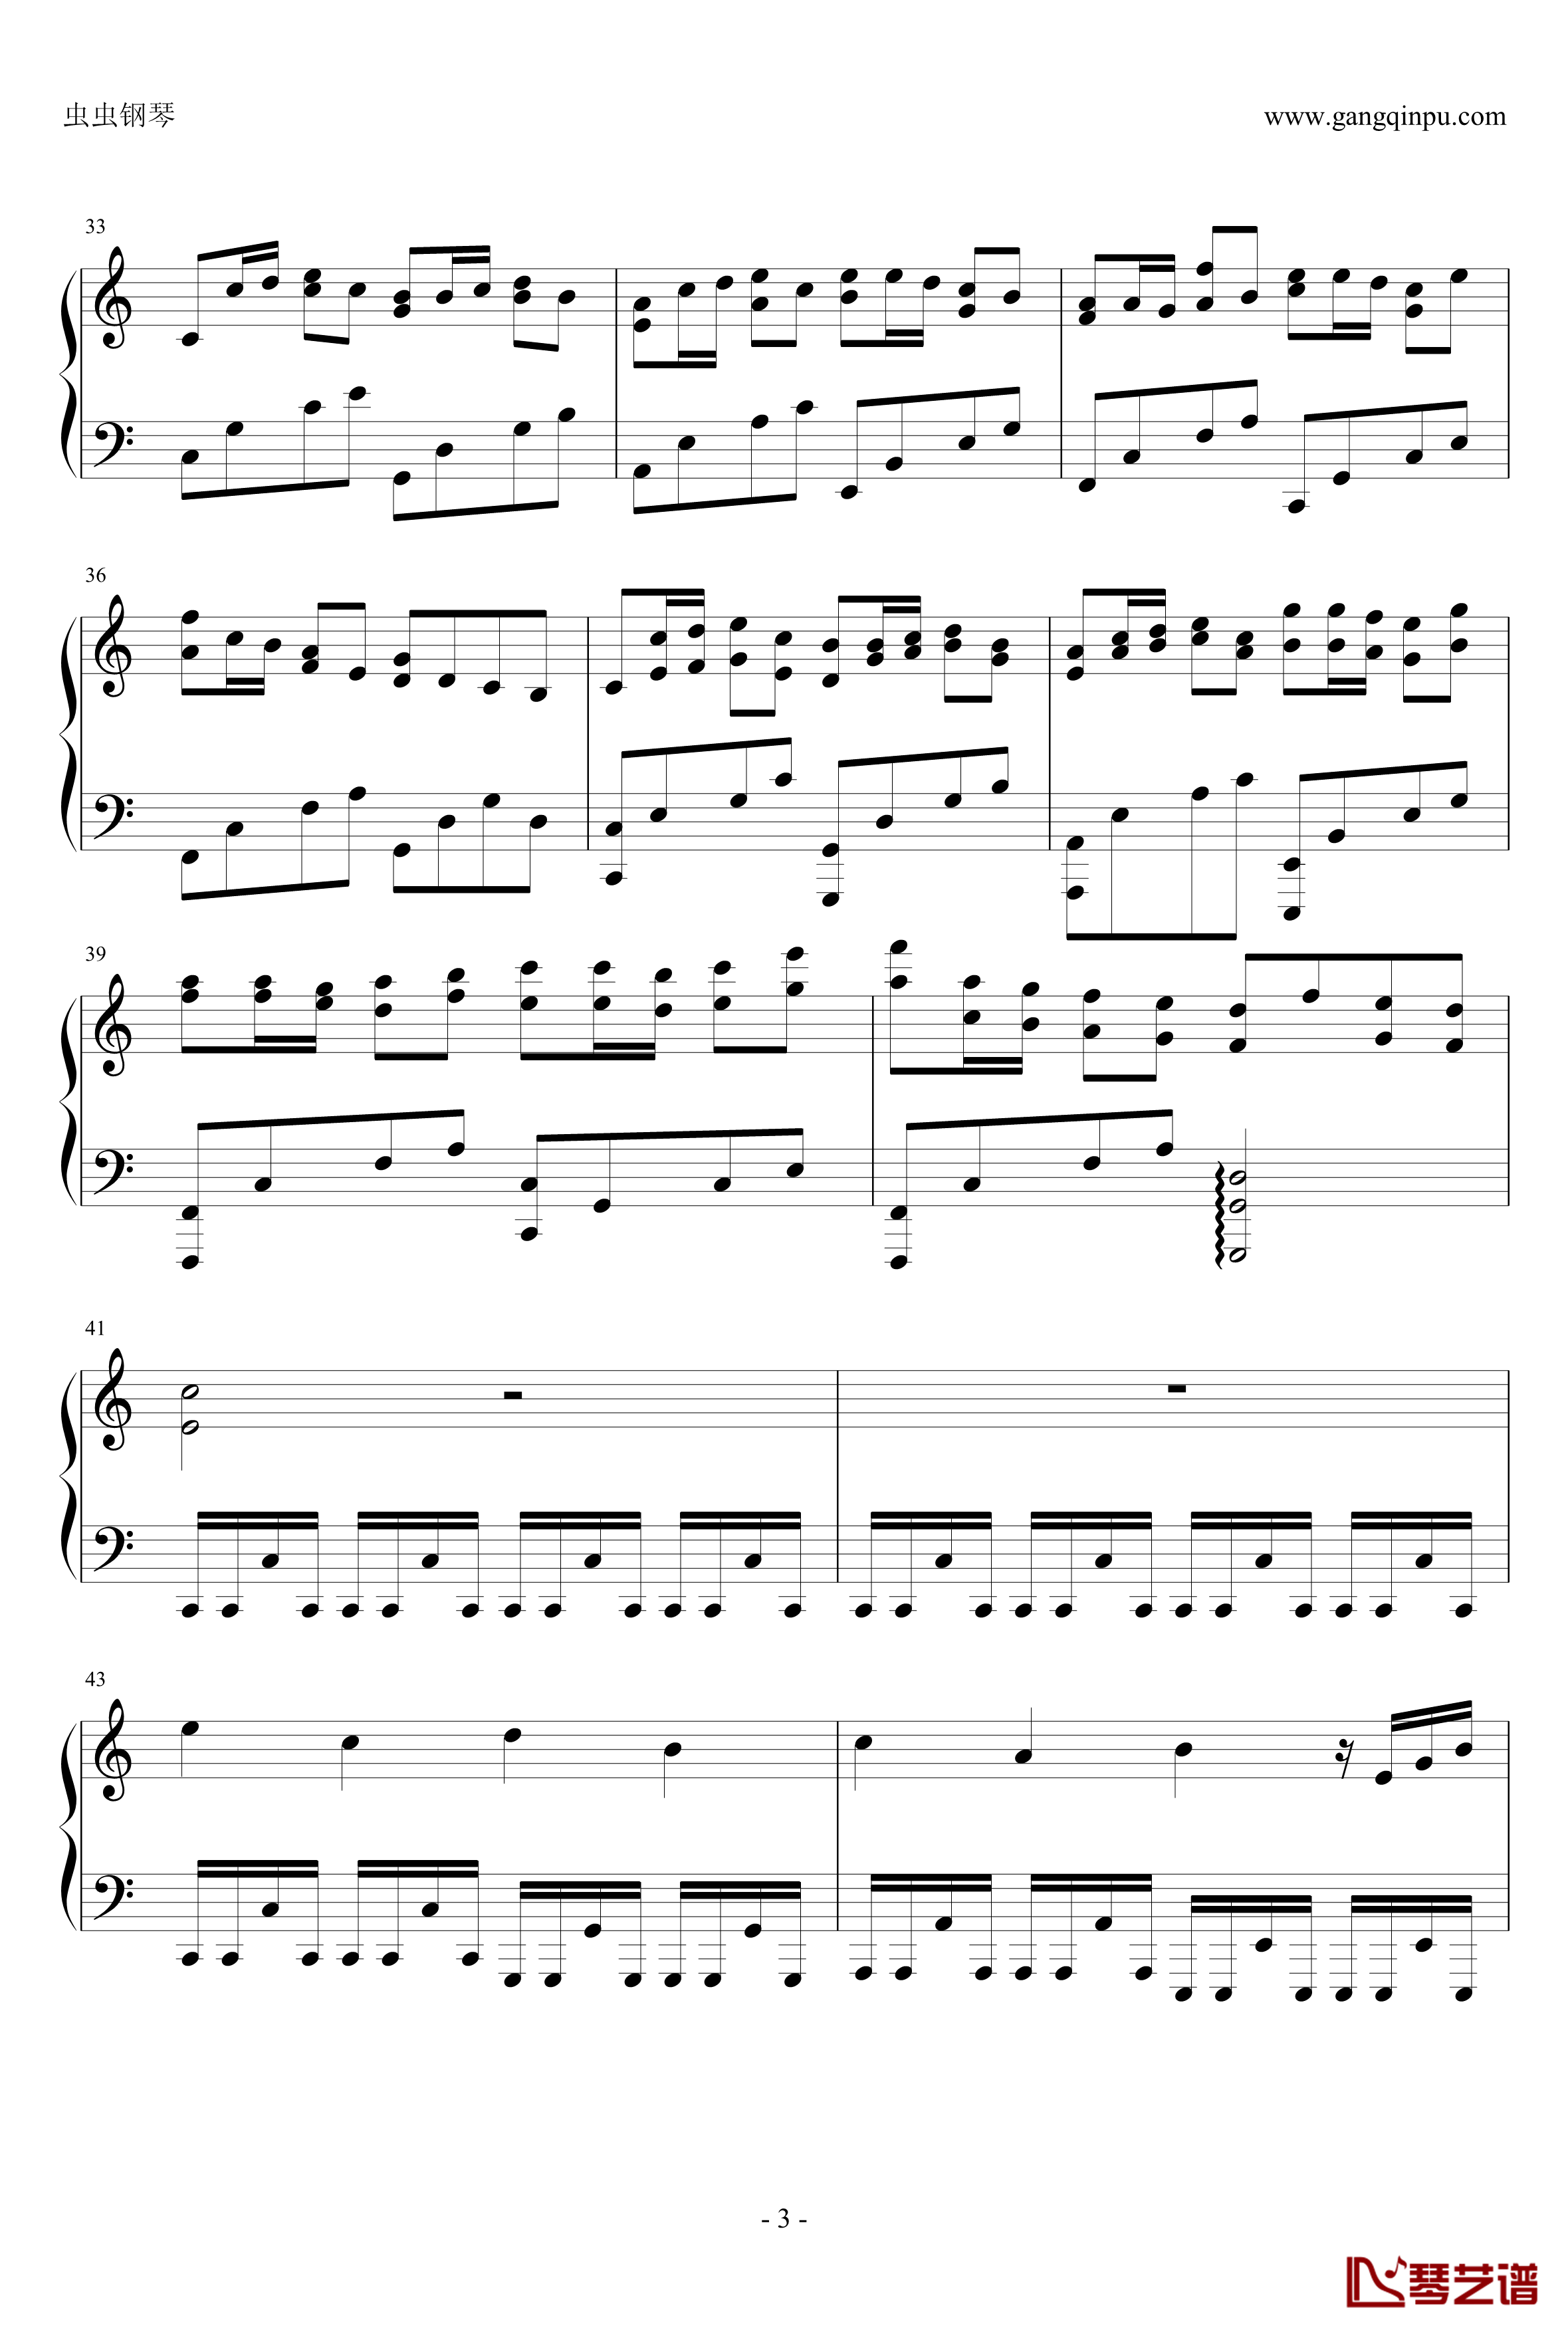 卡农疯狂摇滚版钢琴谱-约翰·巴哈贝尔3